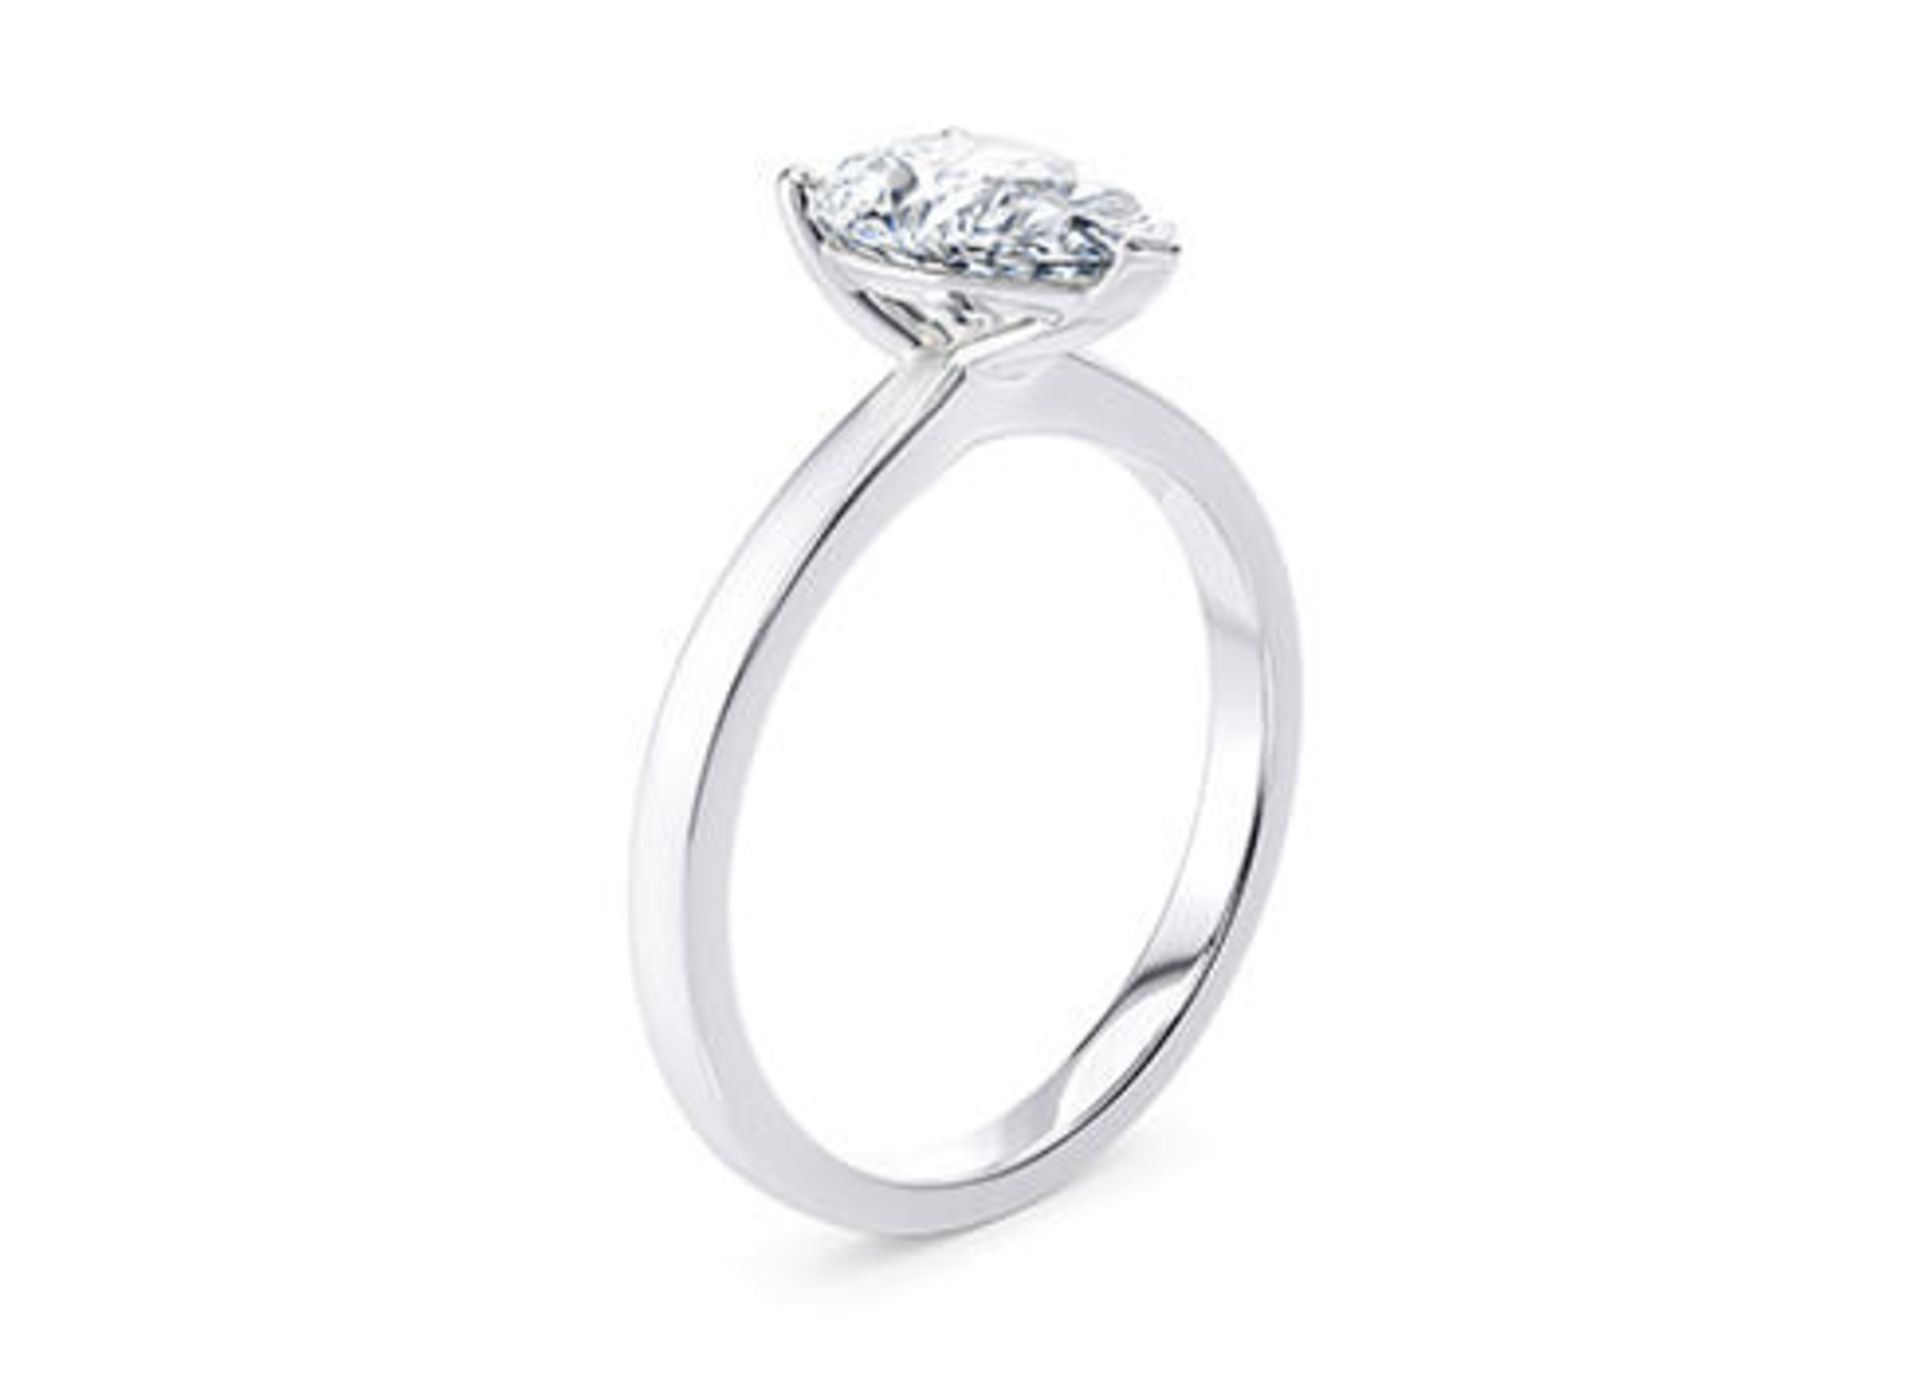 ** ON SALE ** Pear Cut Diamond Platinum Ring 2.50 Carat E Colour VS2 Clarity EX EX - IGI - Image 2 of 3